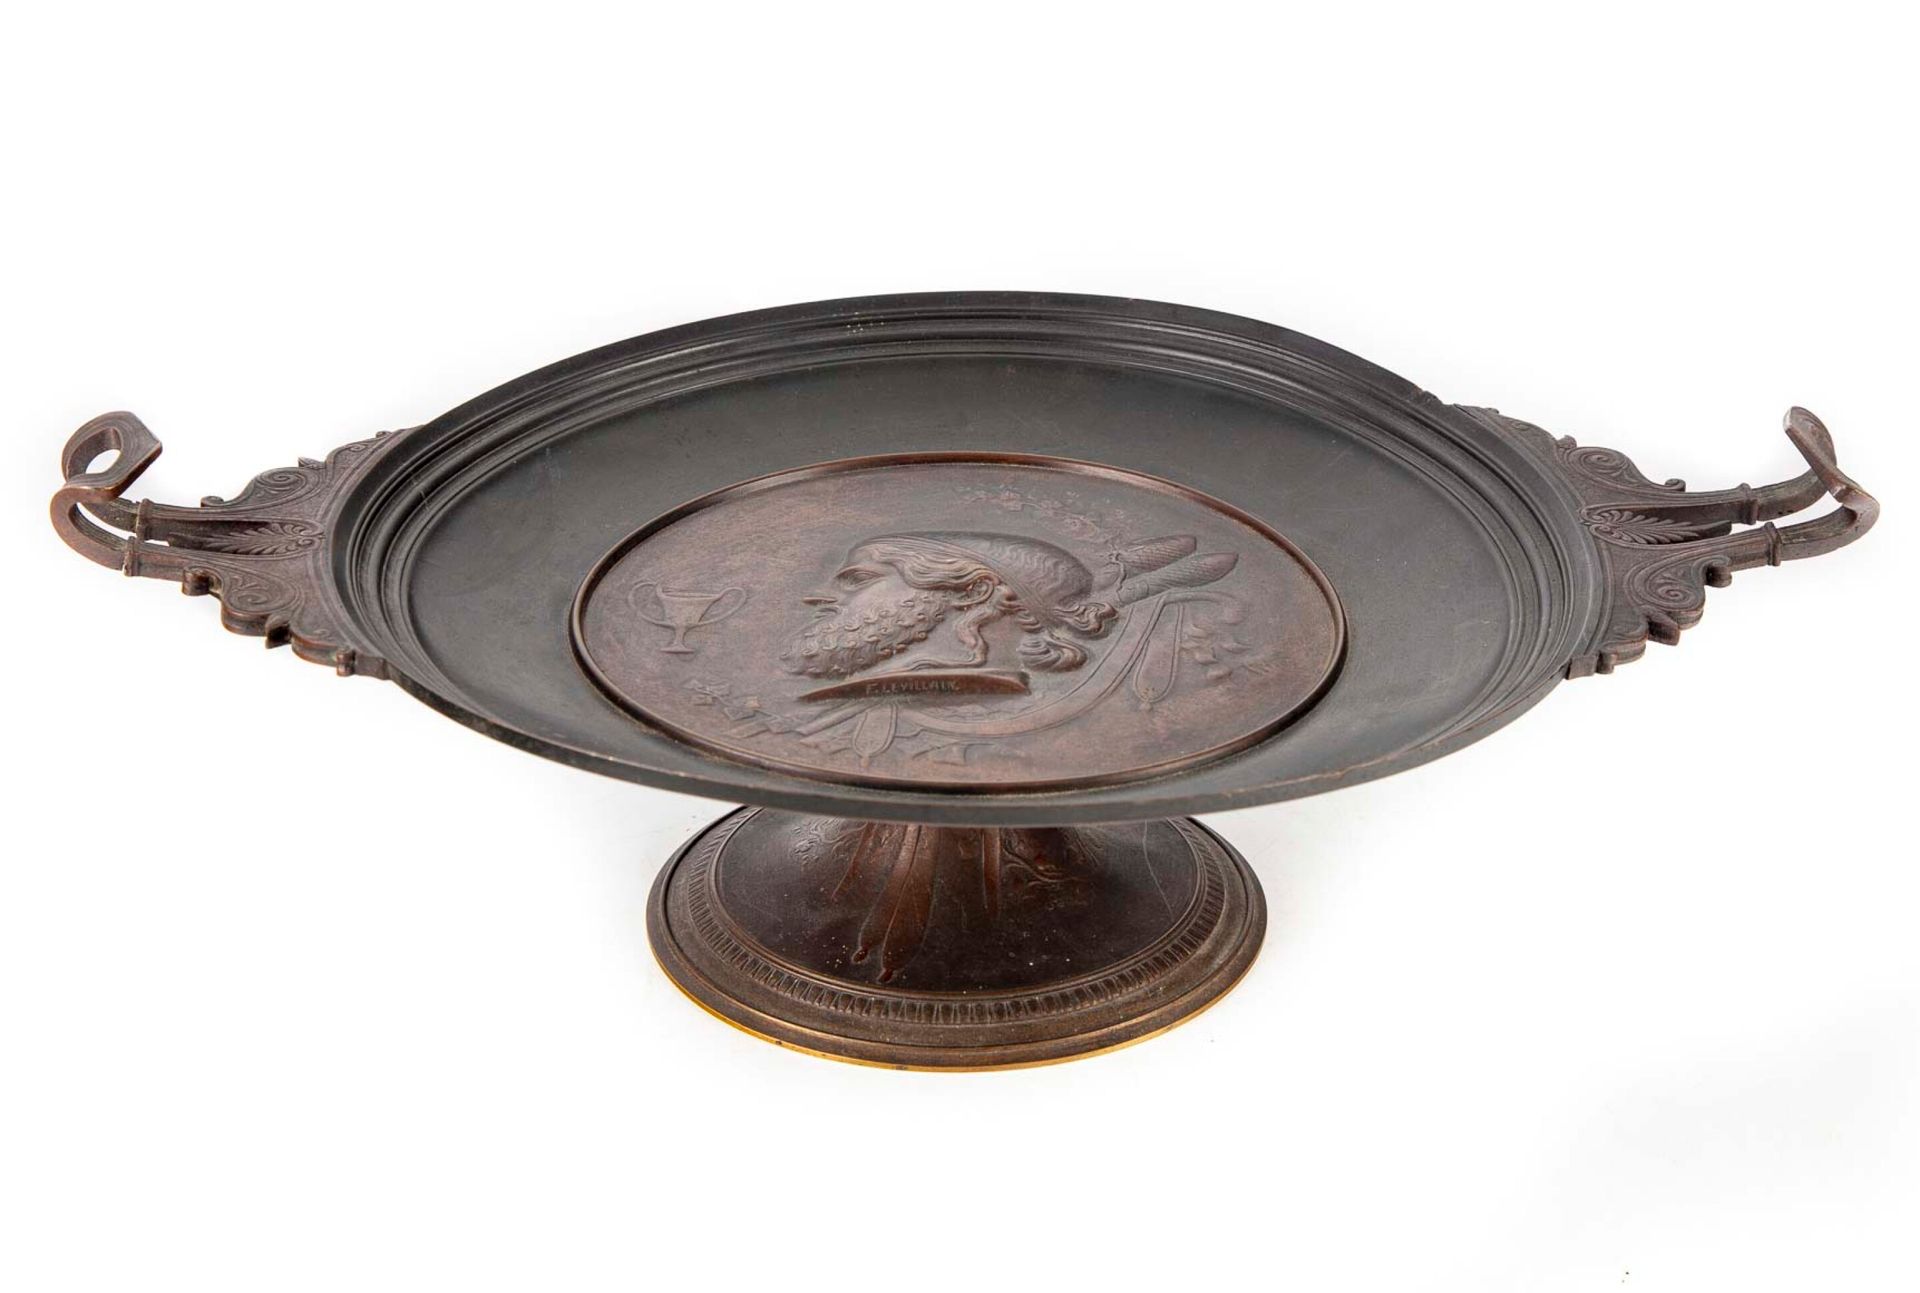 LEVILLAIN 斐迪南-勒维兰(1837-1905)

饰有仿古轮廓的青铜杯

H.11.5厘米、长45厘米、深31厘米